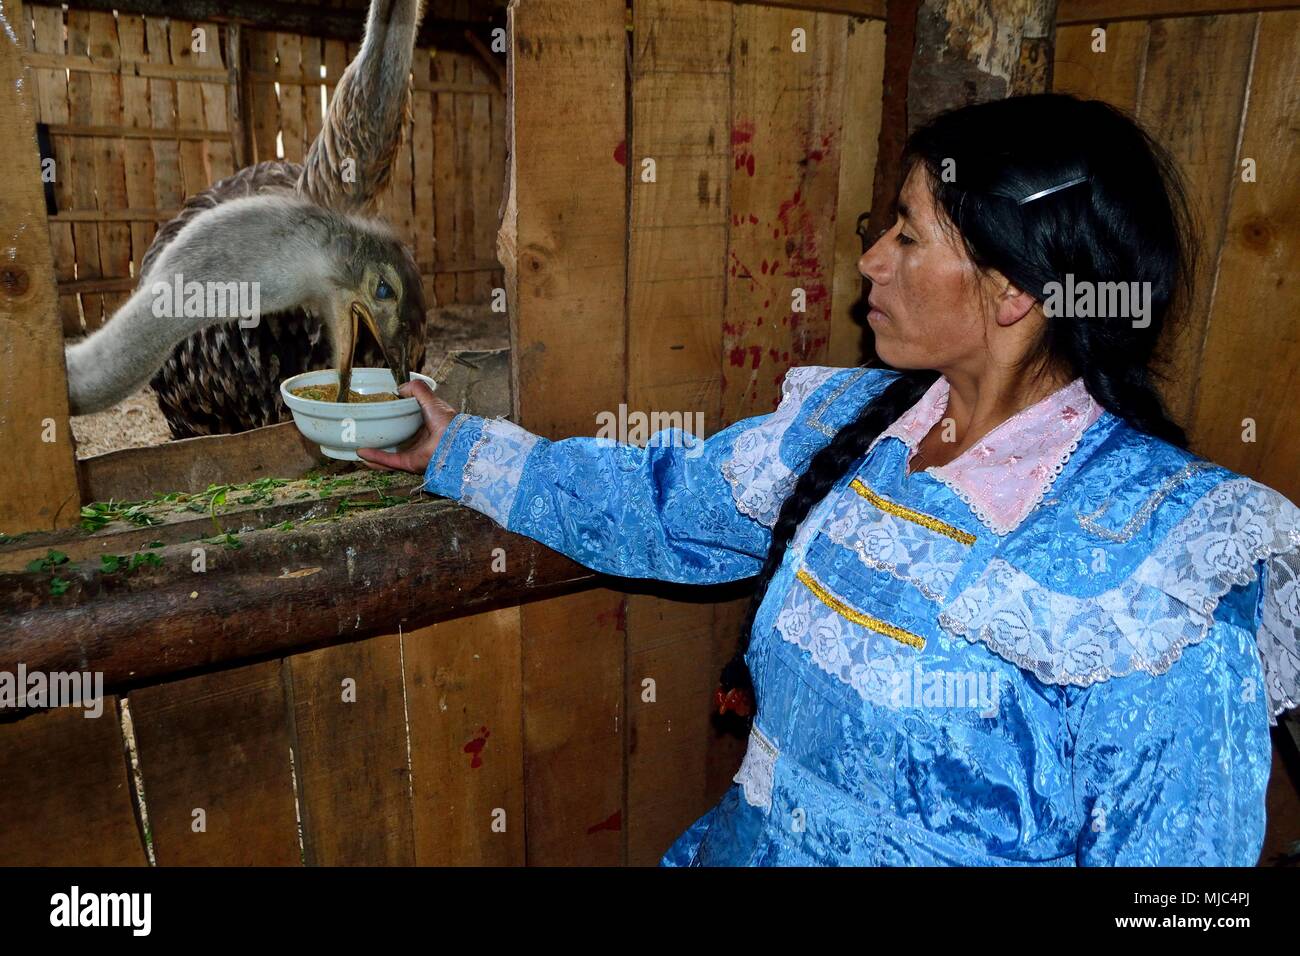 Manger de l'autruche - Zoo de GRANJA PORCON - coopérative évangélique - département de Cajamarca au Pérou. Banque D'Images